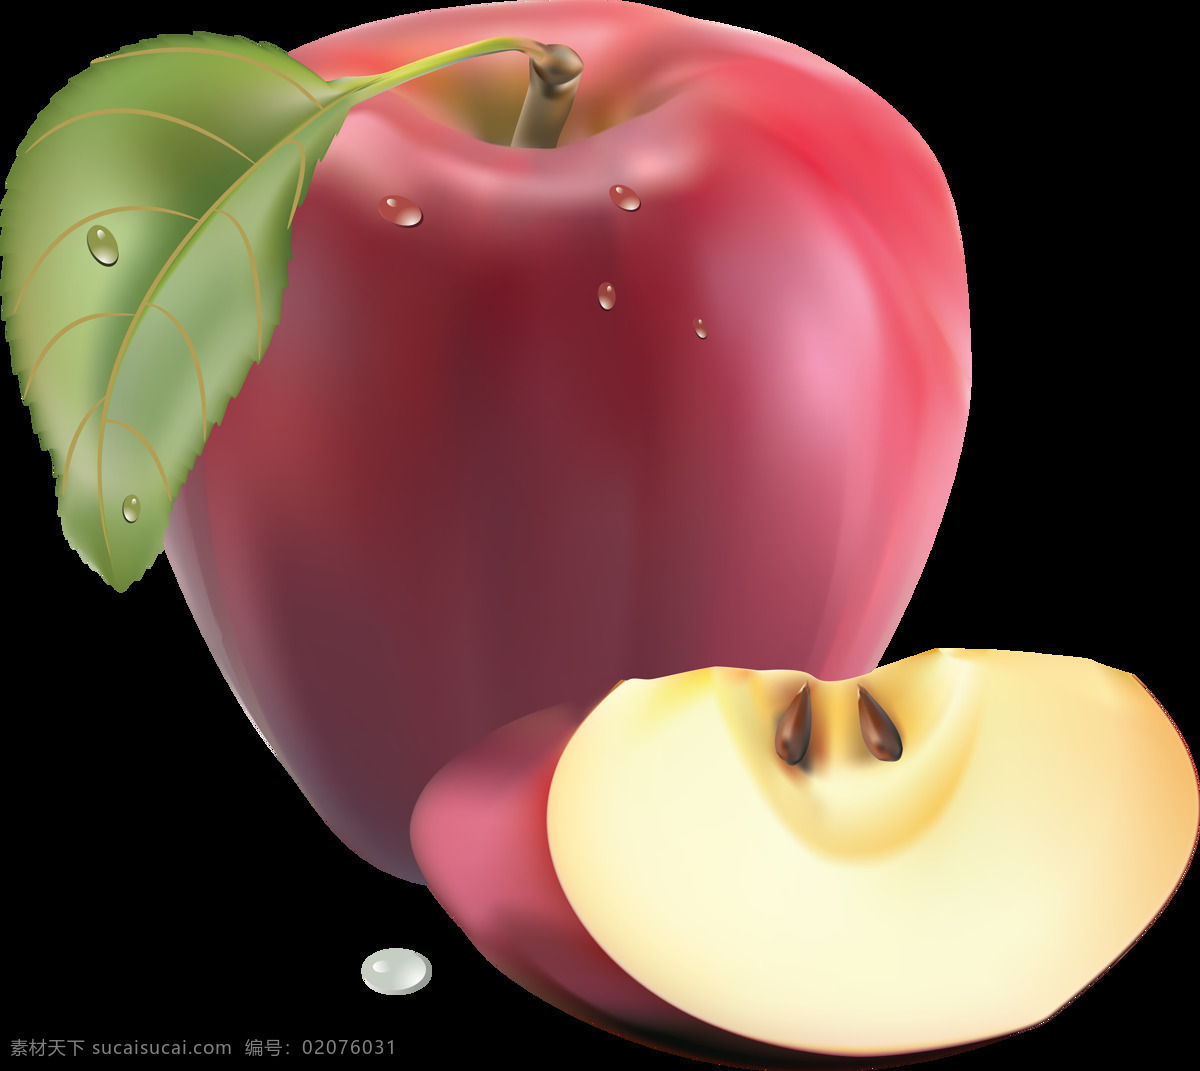 红色 漂亮 苹果 免 抠 透明 图 层 青苹果 苹果卡通图片 苹果logo 苹果简笔画 壁纸高清 大苹果 红苹果 苹果梨树 苹果商标 金毛苹果 青苹果榨汁